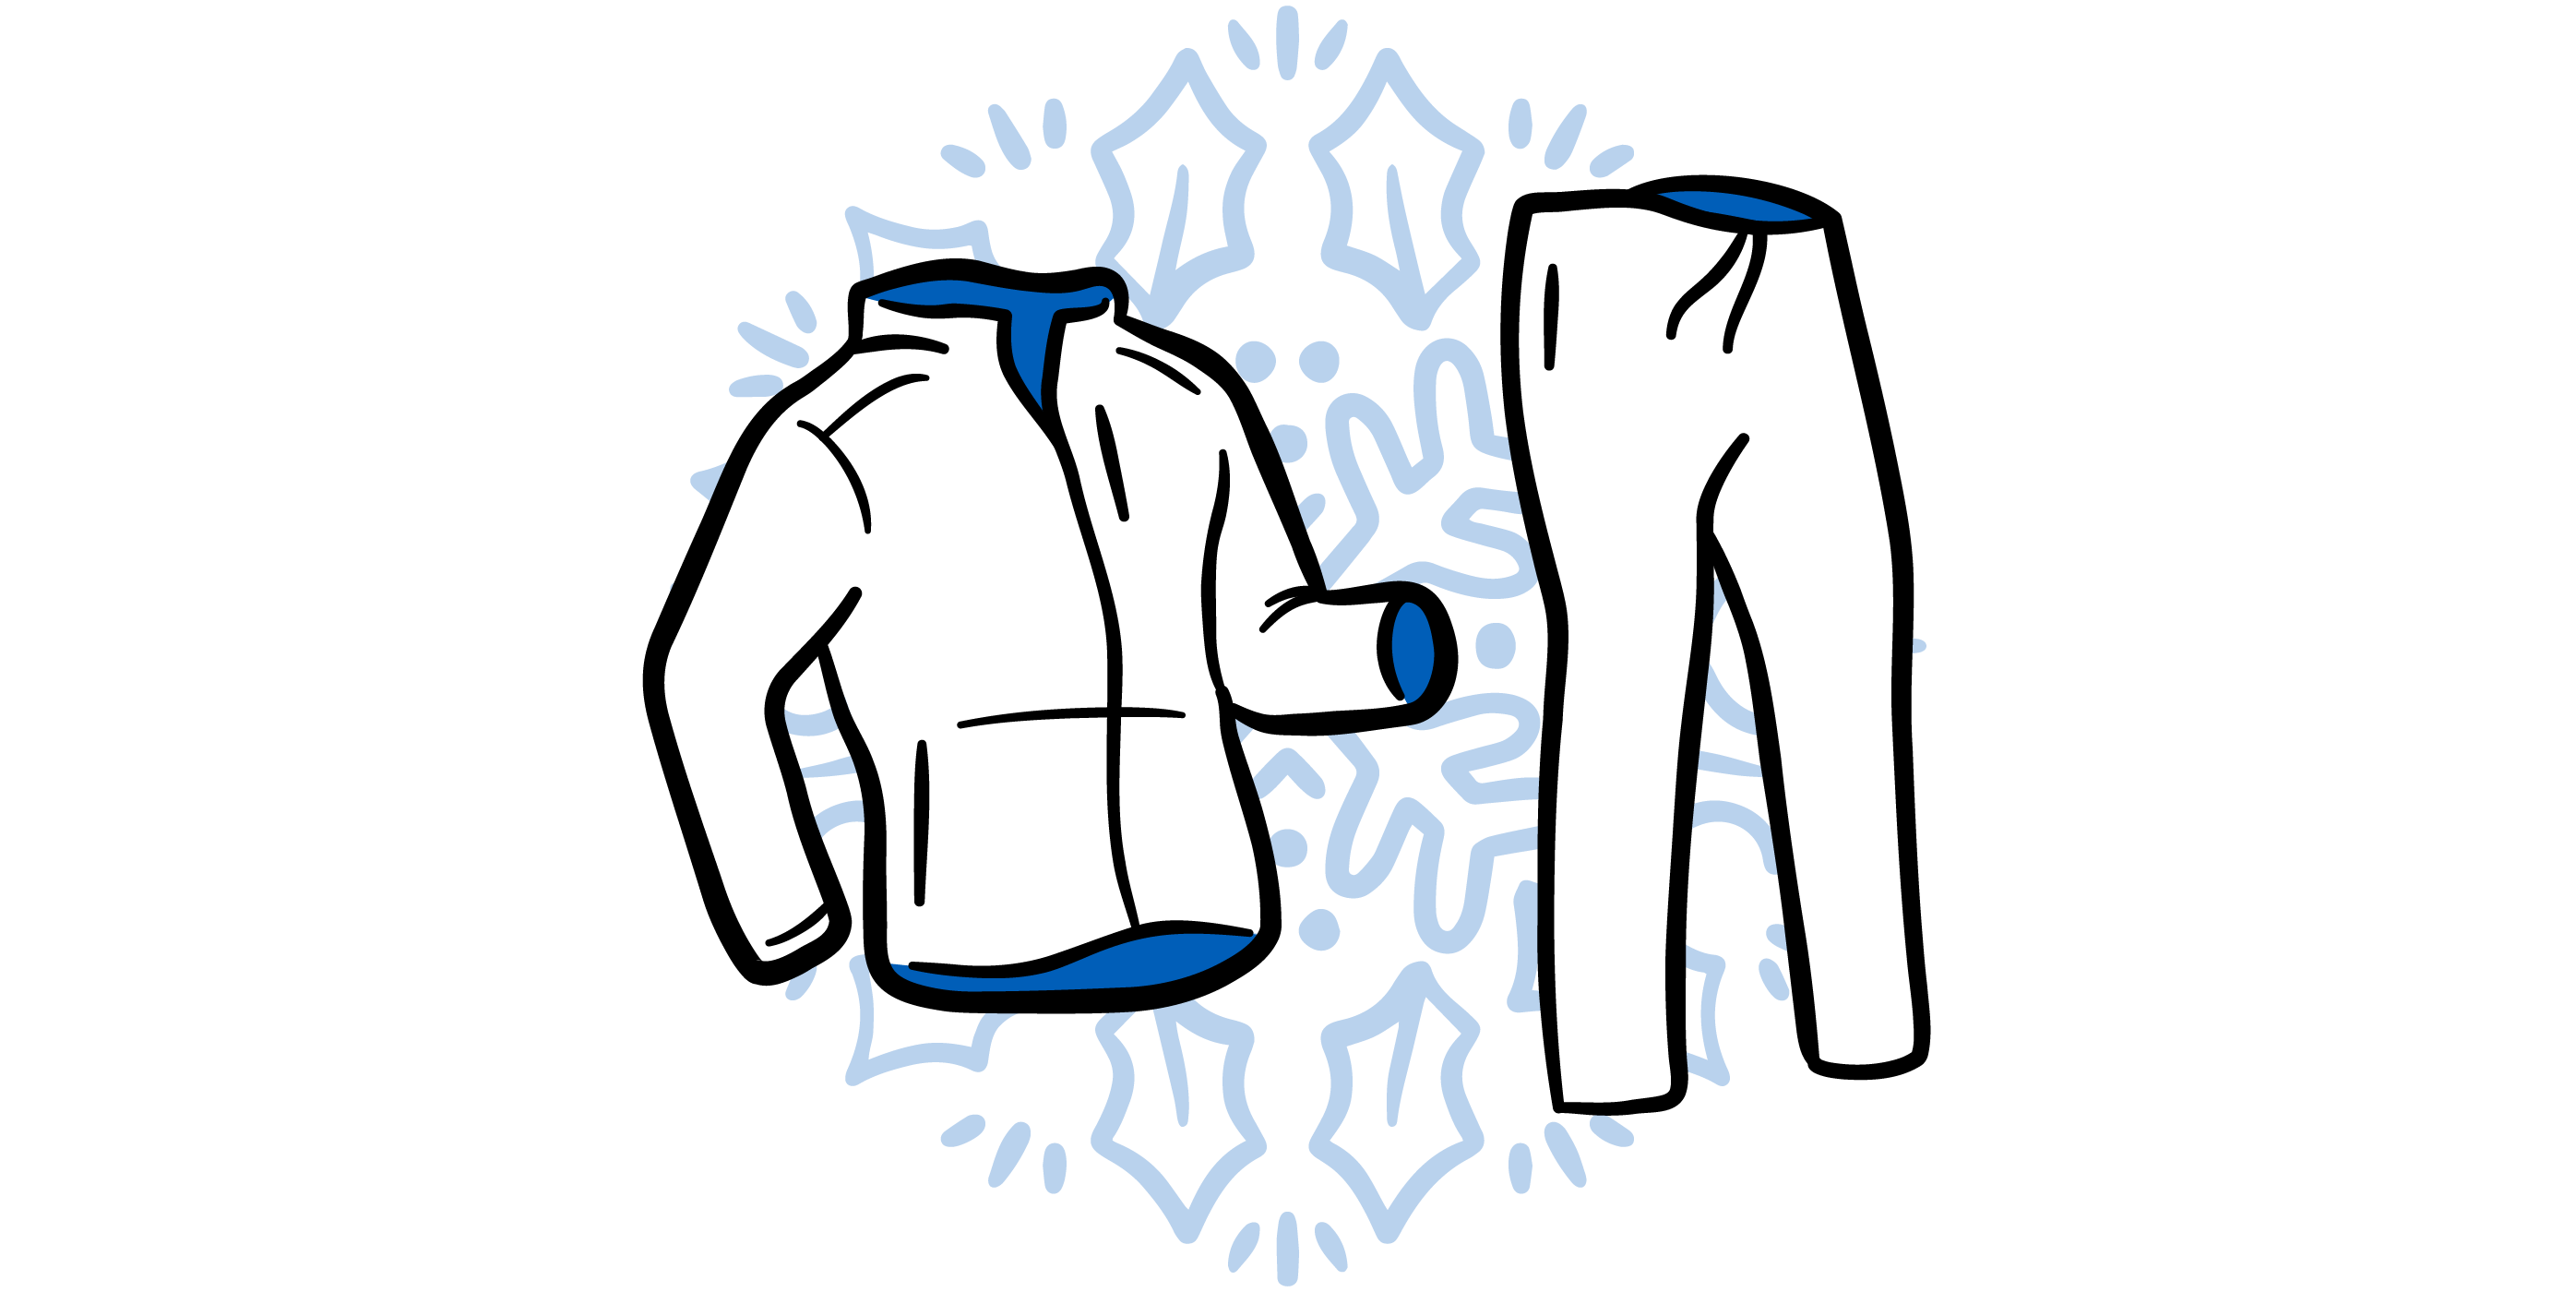 Capuchon, t-shirt, short illustrés avec les étiquettes de vente